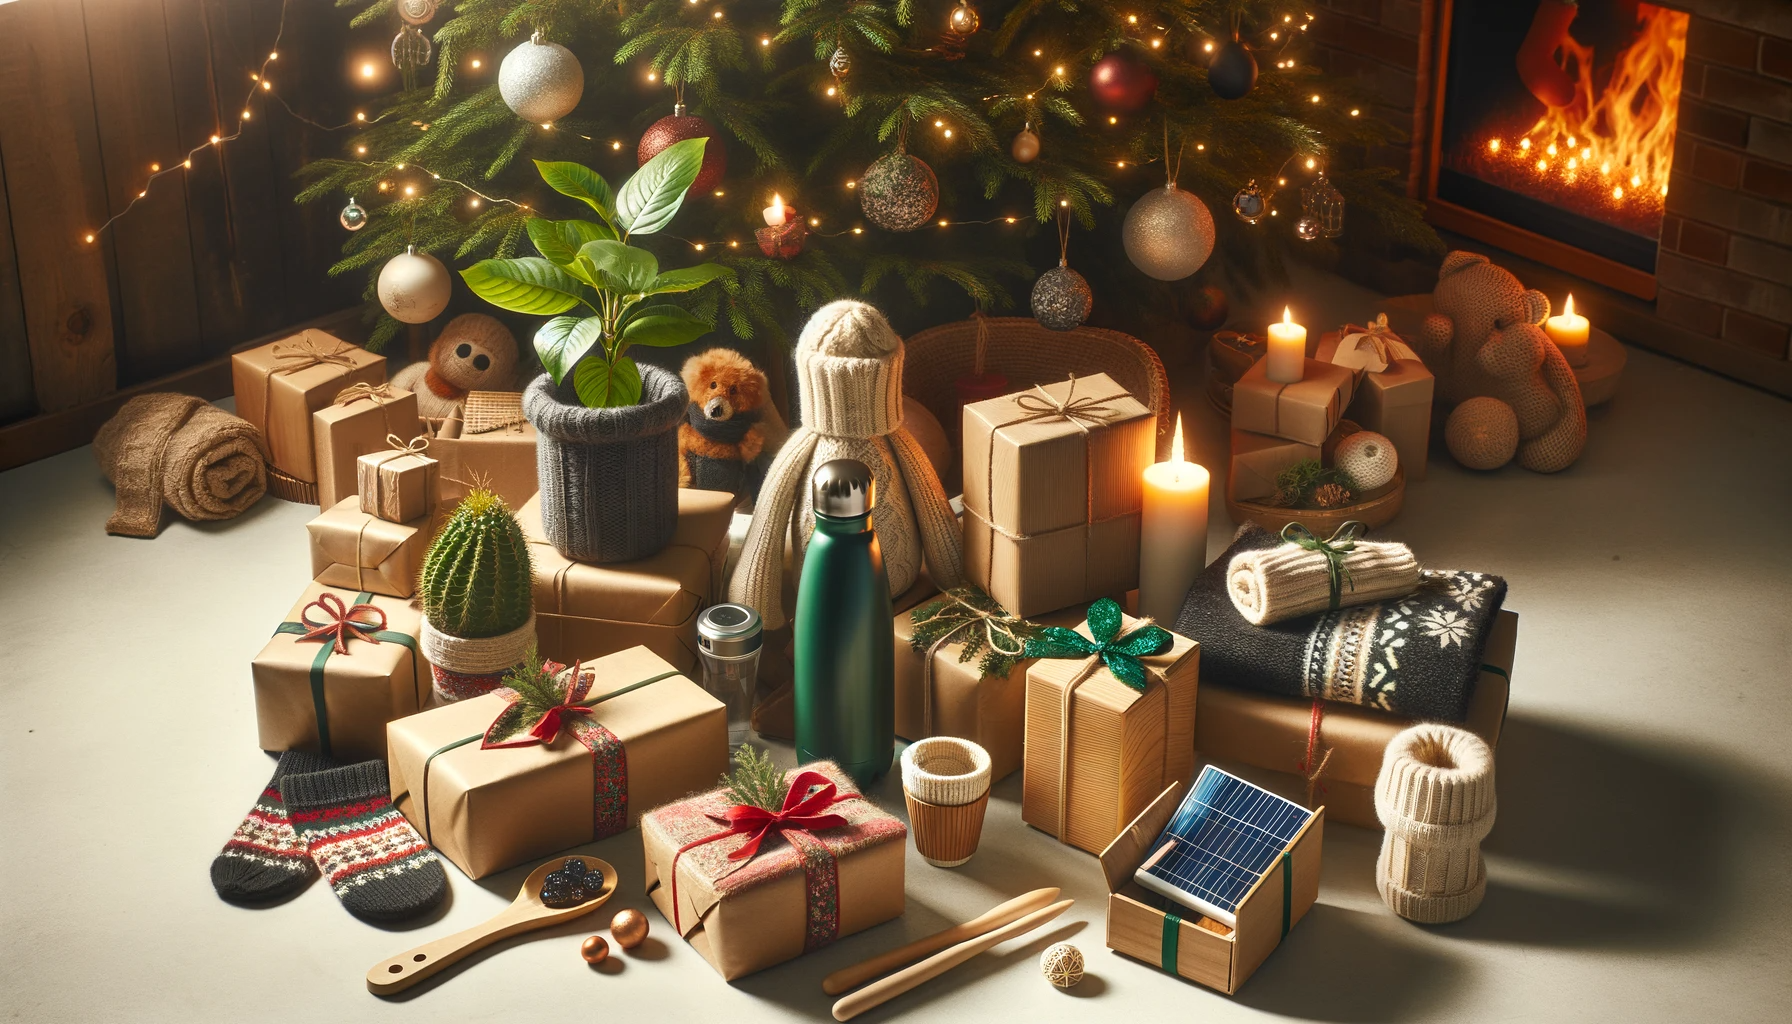 Guide pratique pour choisir des cadeaux écologiques pour Noël